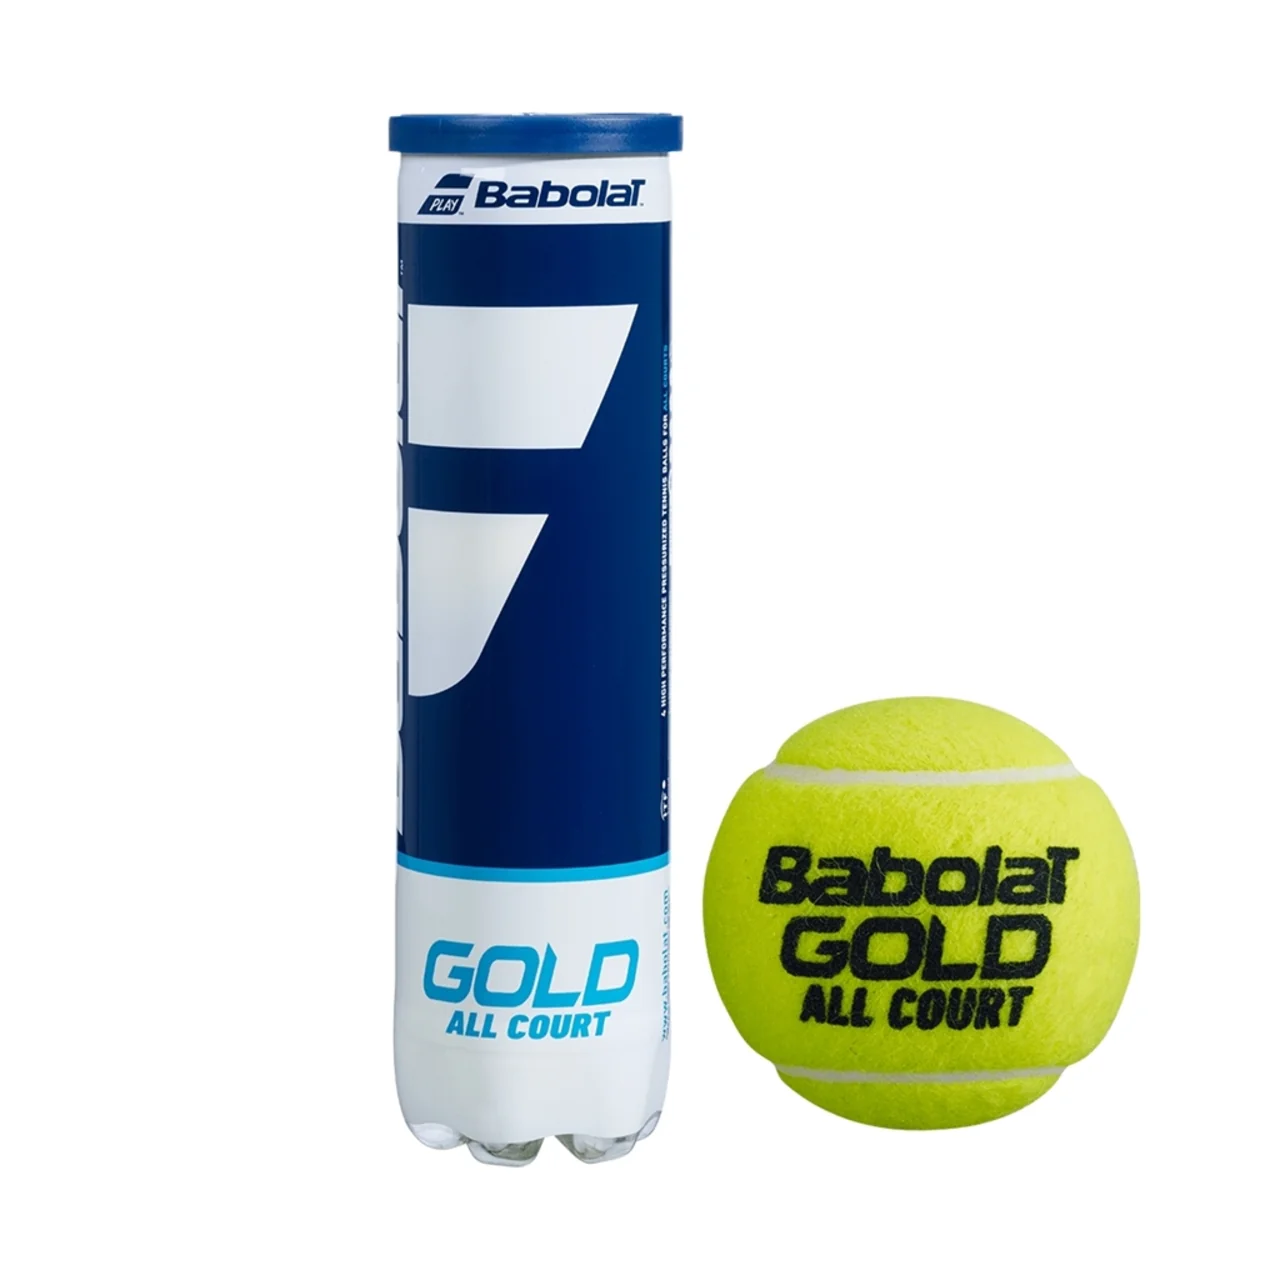 Babolat Gold 18 tuubia